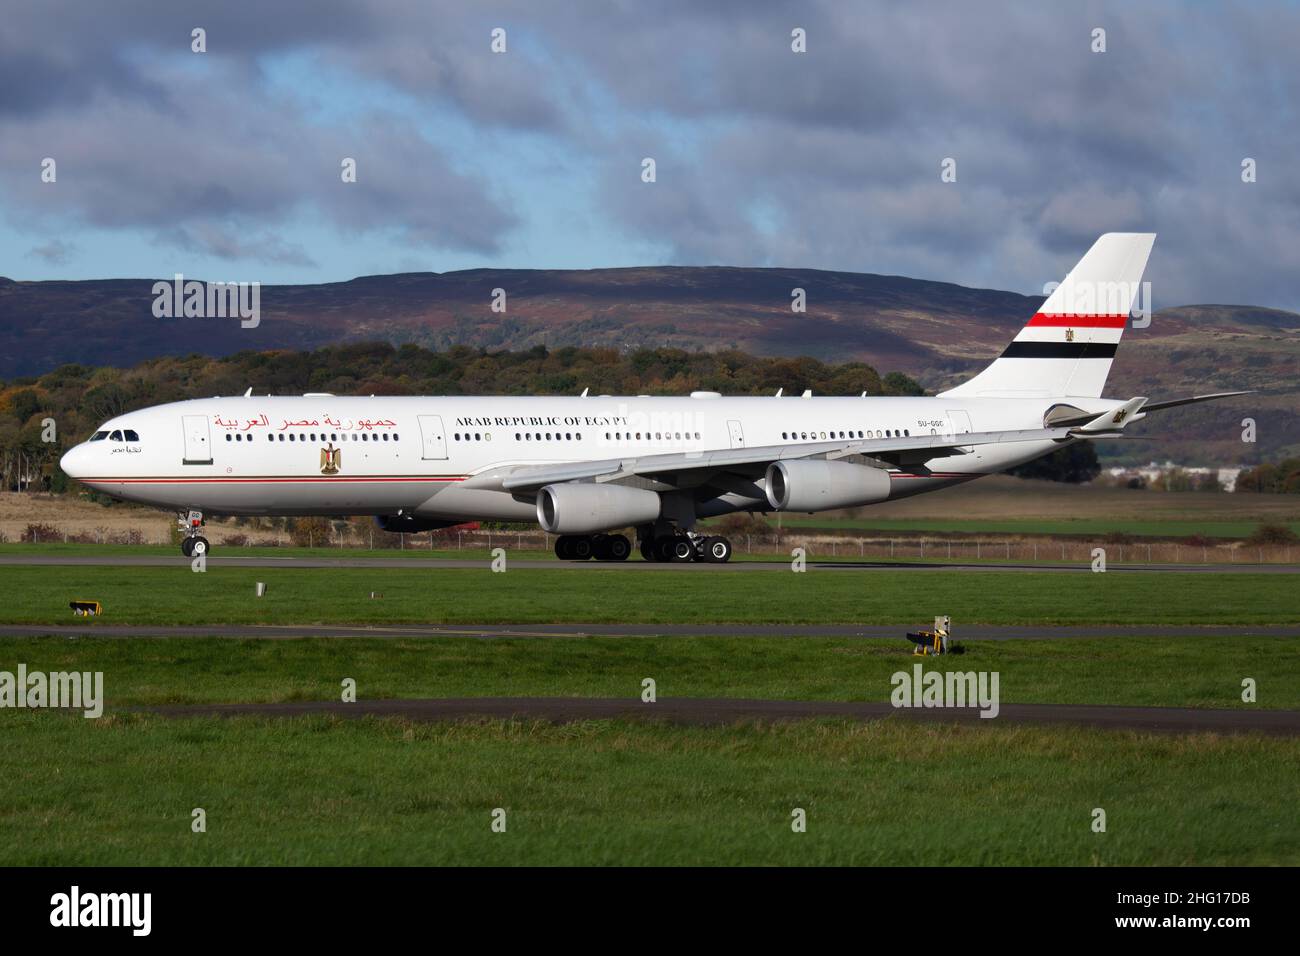 Ägyptische Regierung / Arabische Republik Ägypten Airbus A340-200 VIP-Jet, der nach COP26 mit Präsident Abdel Fattah Al-Sisi am Flughafen Glasgow abfliegt Stockfoto